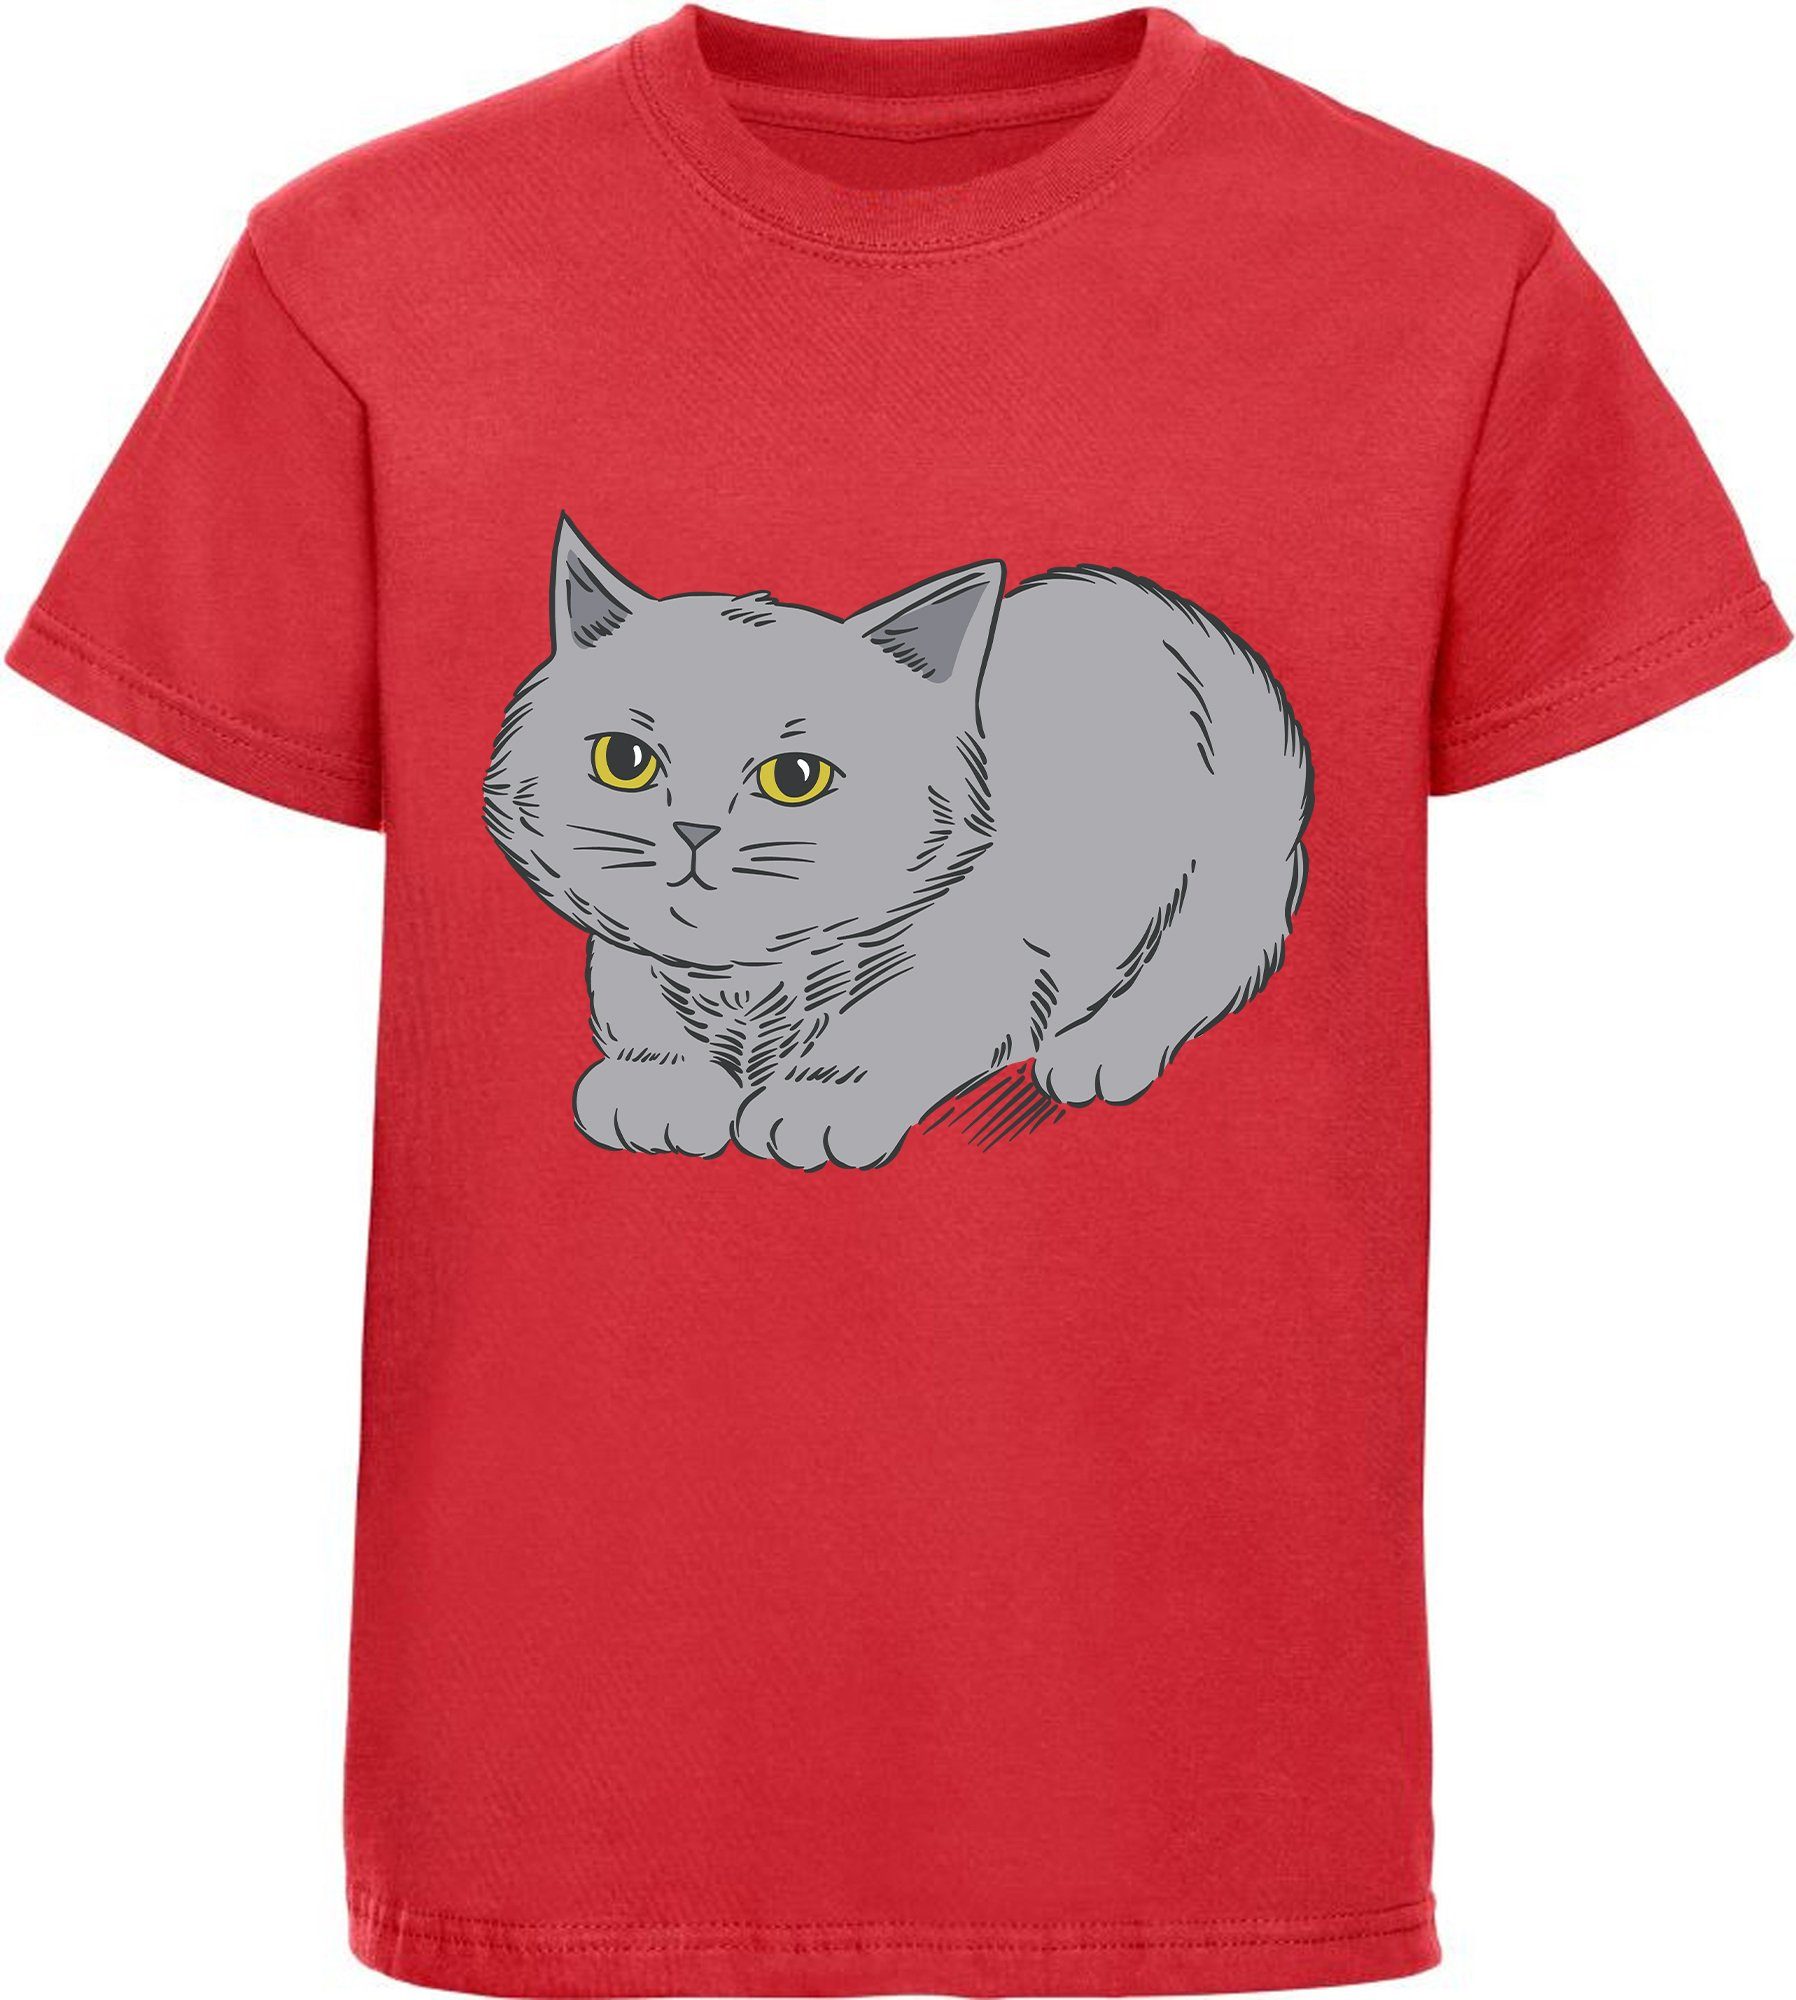 MyDesign24 Print-Shirt bedrucktes Mädchen T-Shirt mit niedlicher grauen Katze Baumwollshirt mit Katze, weiß, schwarz, rot, rosa, i107